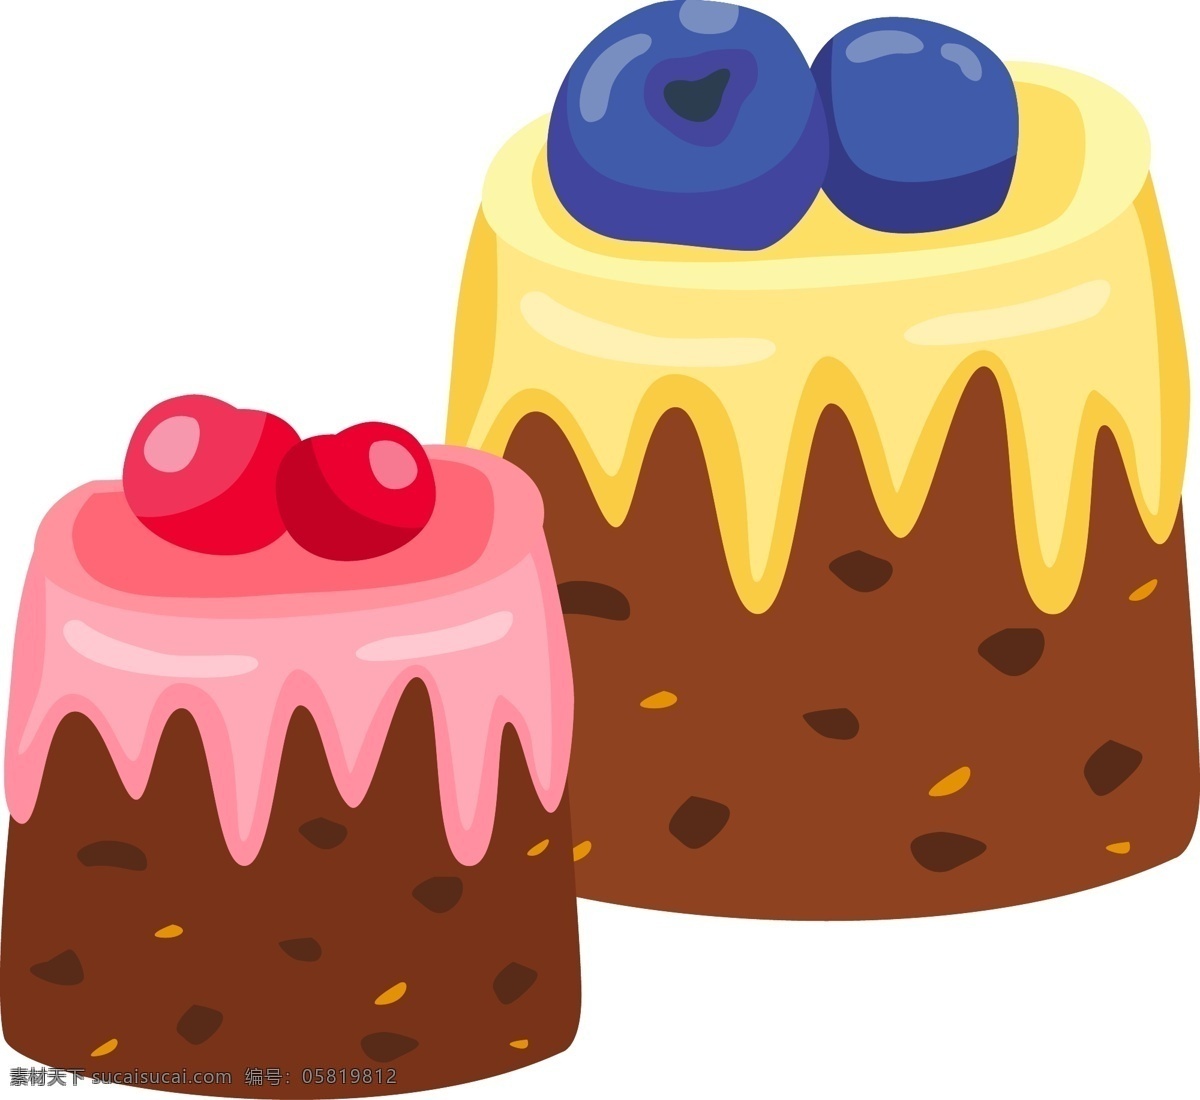 卡通 手绘 甜品 甜点 美食 儿童美食 卡通蛋糕 奶油蛋糕 水果蛋糕 纸杯蛋糕 儿童节 巧克力 奶油 宴会 水果 烘焙 生日 祝贺 糕点 纸杯